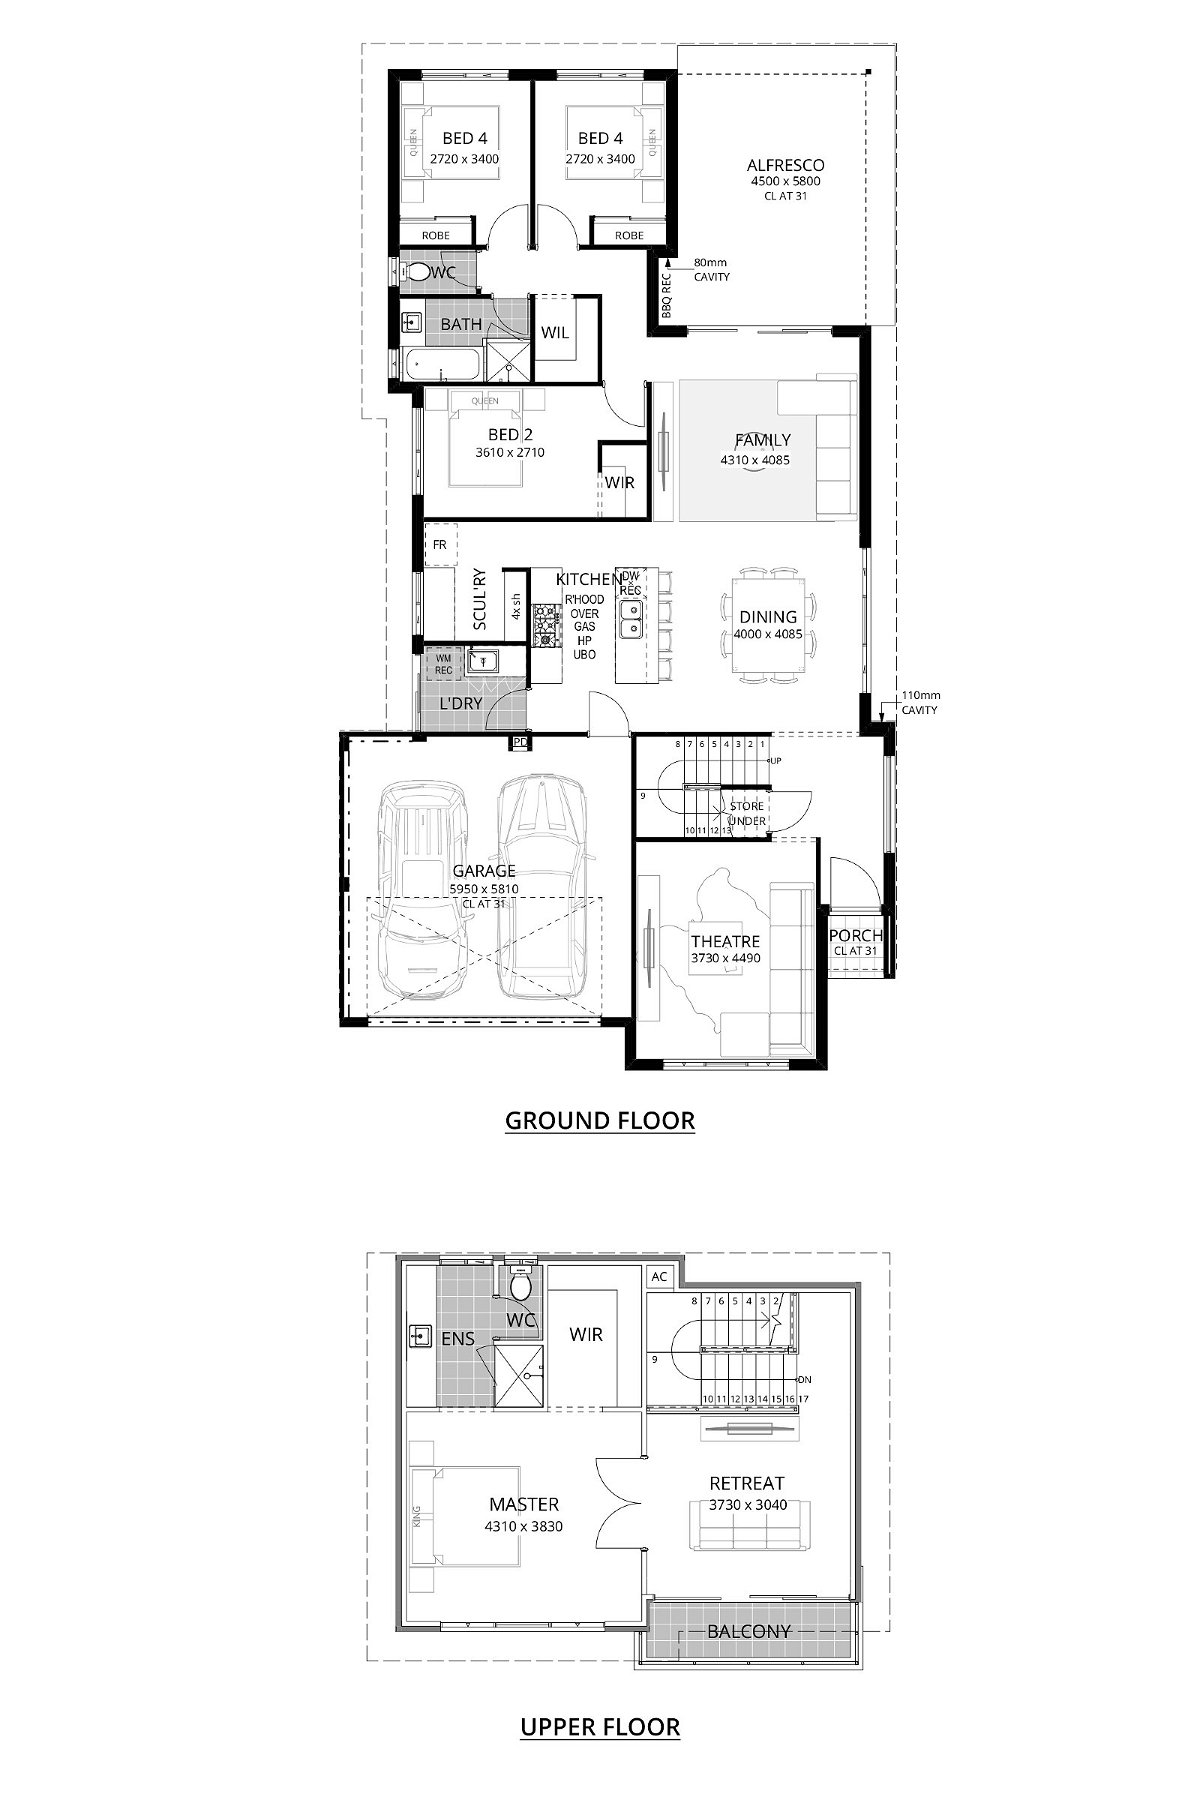 Residential Attitudes - Starlight Serenity - Floorplan - Starlight Serenity Website Floorplans